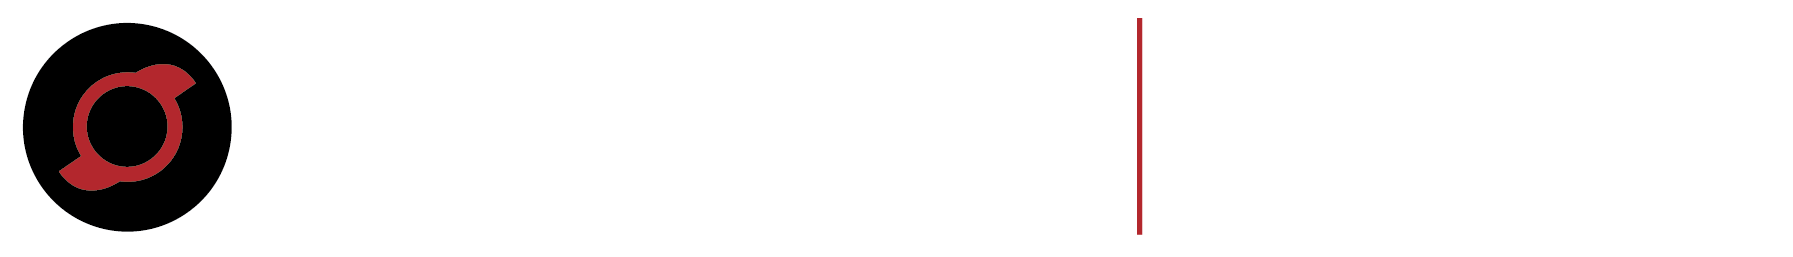 Avinger_CO2_Logo_White_Fill